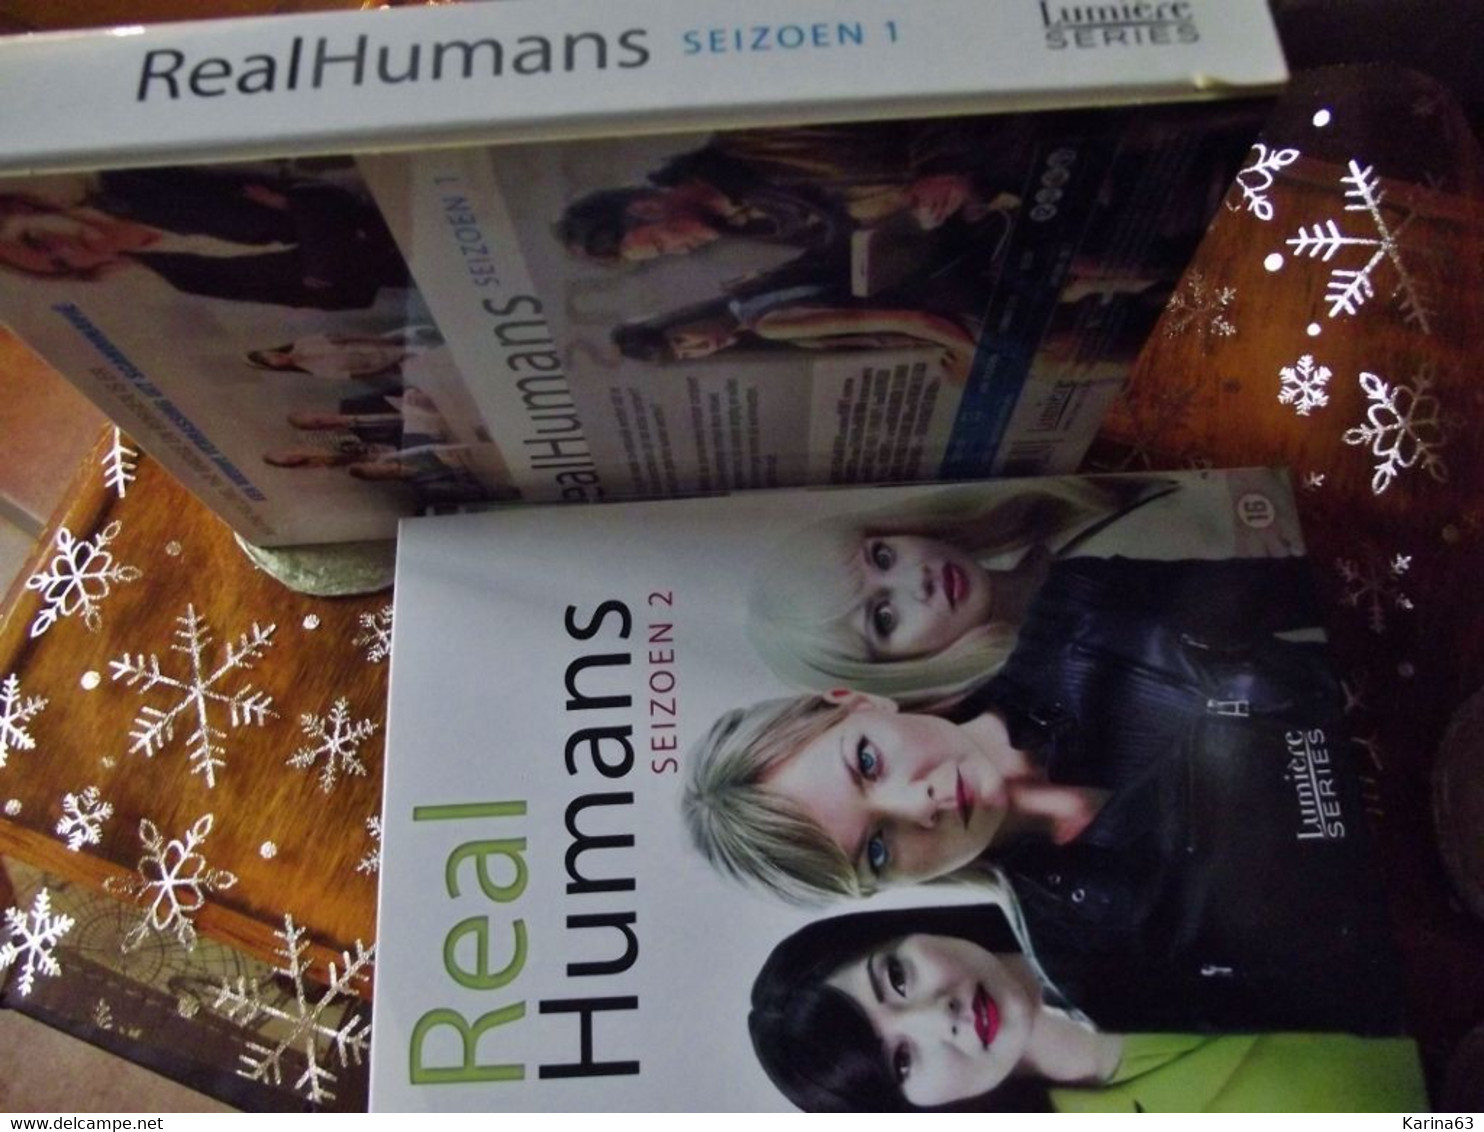 Real Humans - Compleet - Seizoen 1 + Seizoen 2 - TV-Serien